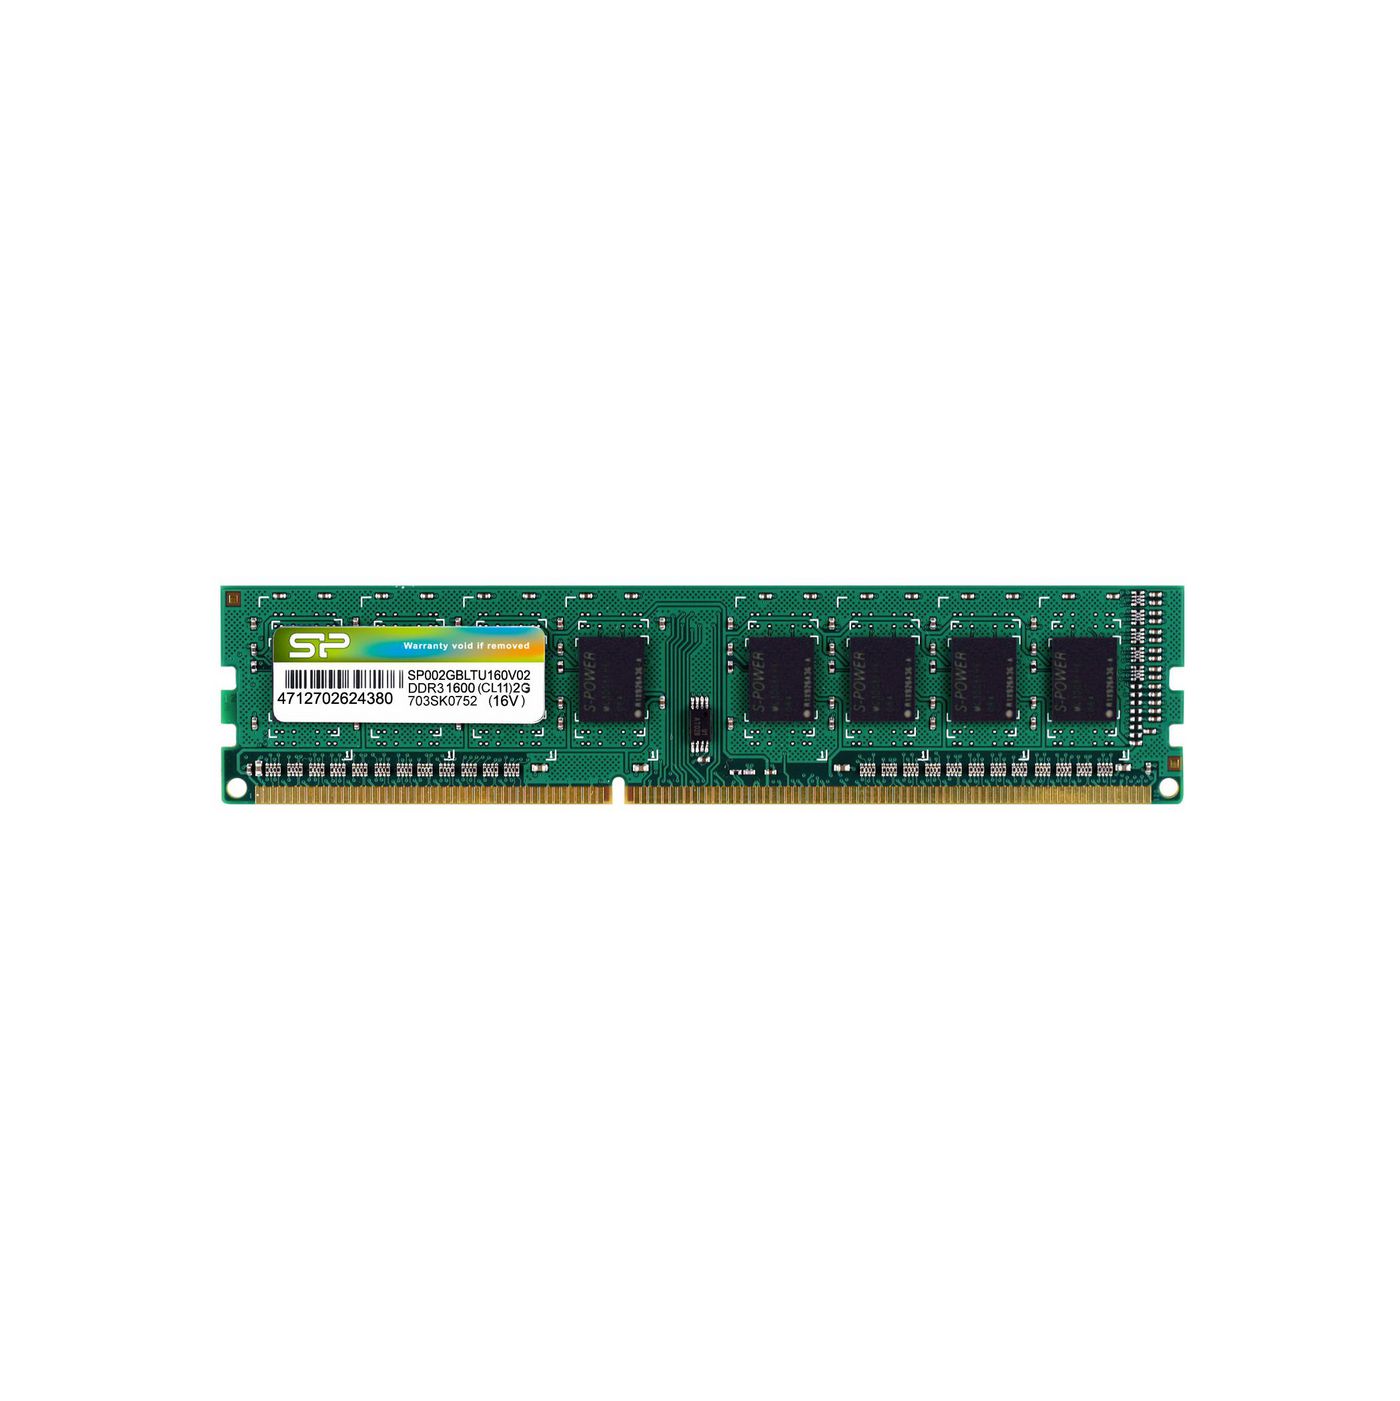 Silicon-Power SP002GBLTU160V02 DDR3 2GB PC 1600 CL11 